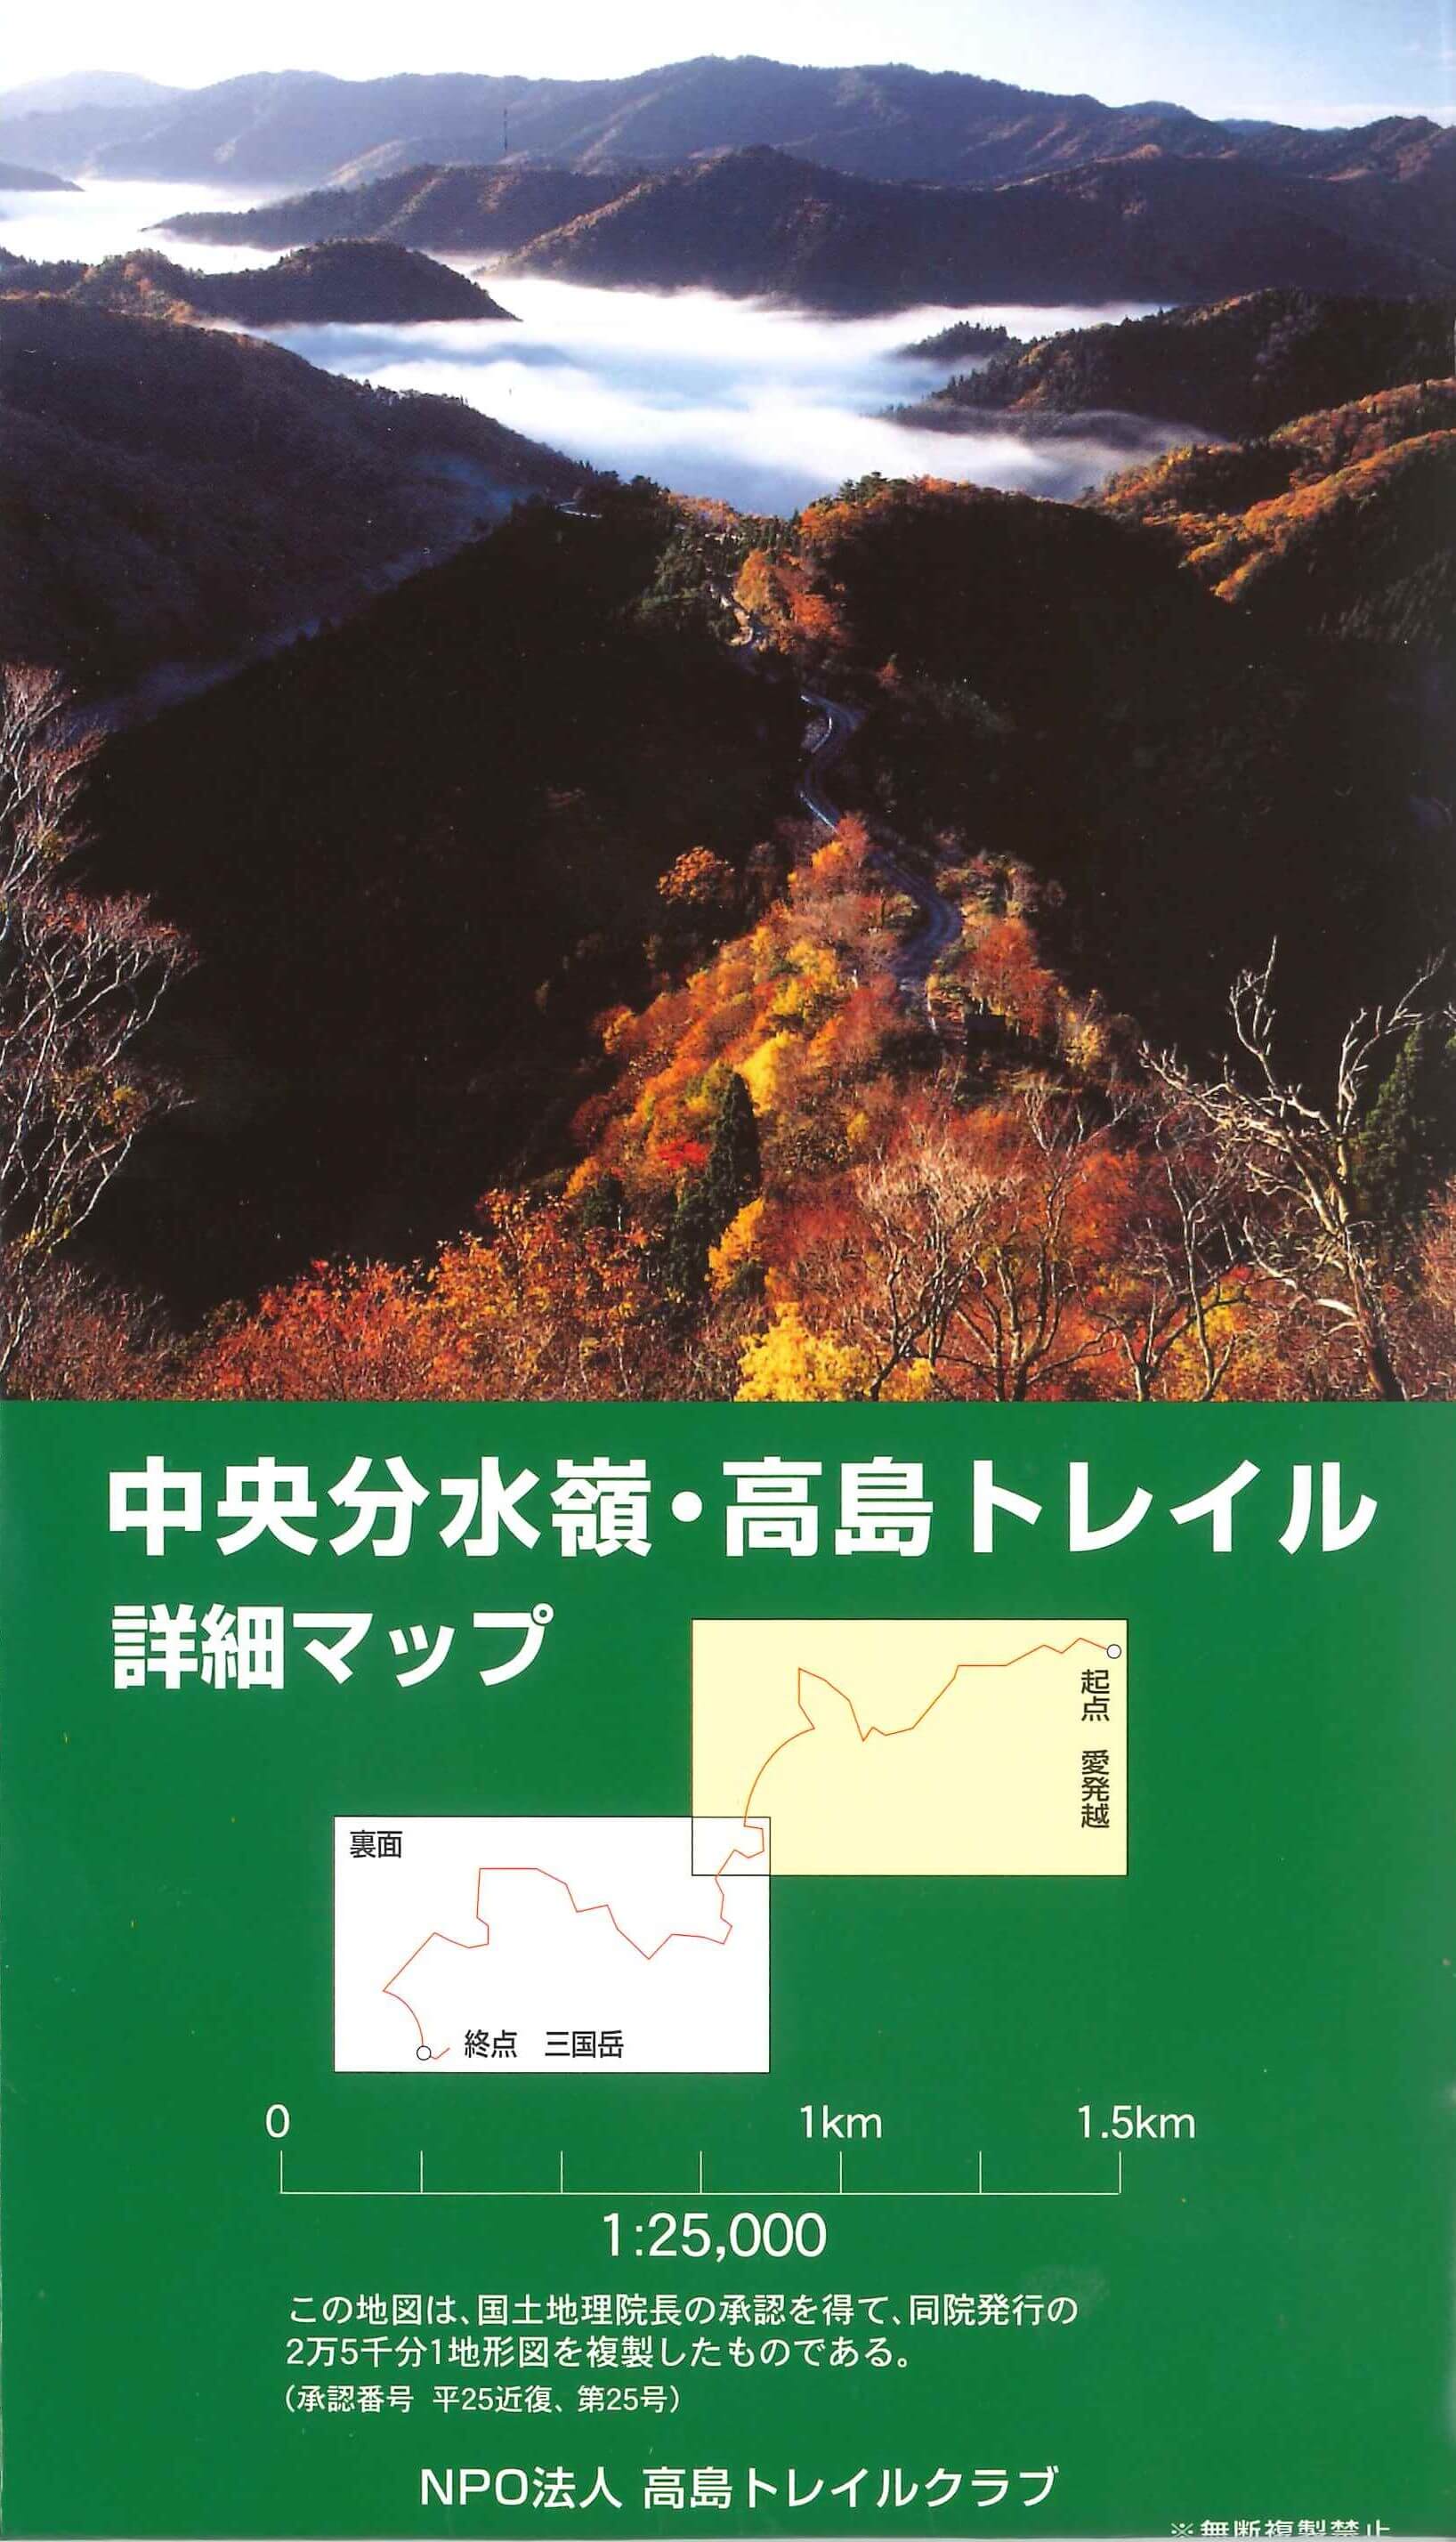 中央分水嶺・高島トレイル トレッキングマップ